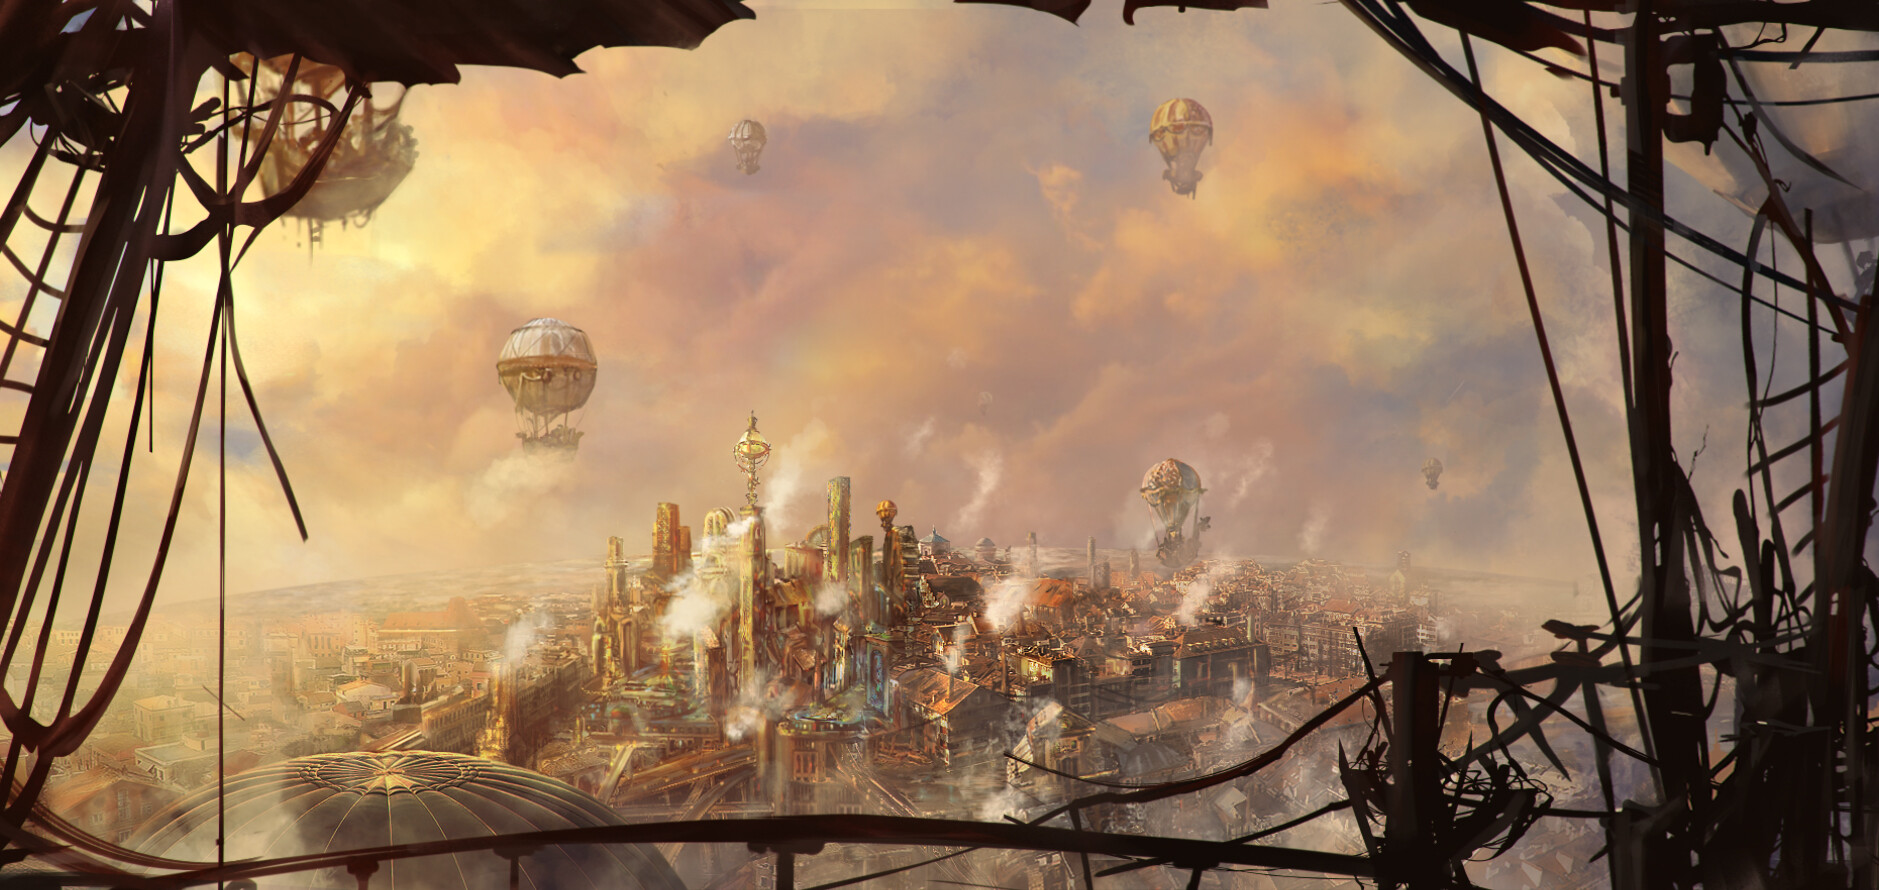 ArtStation - Fantasy steampunk city